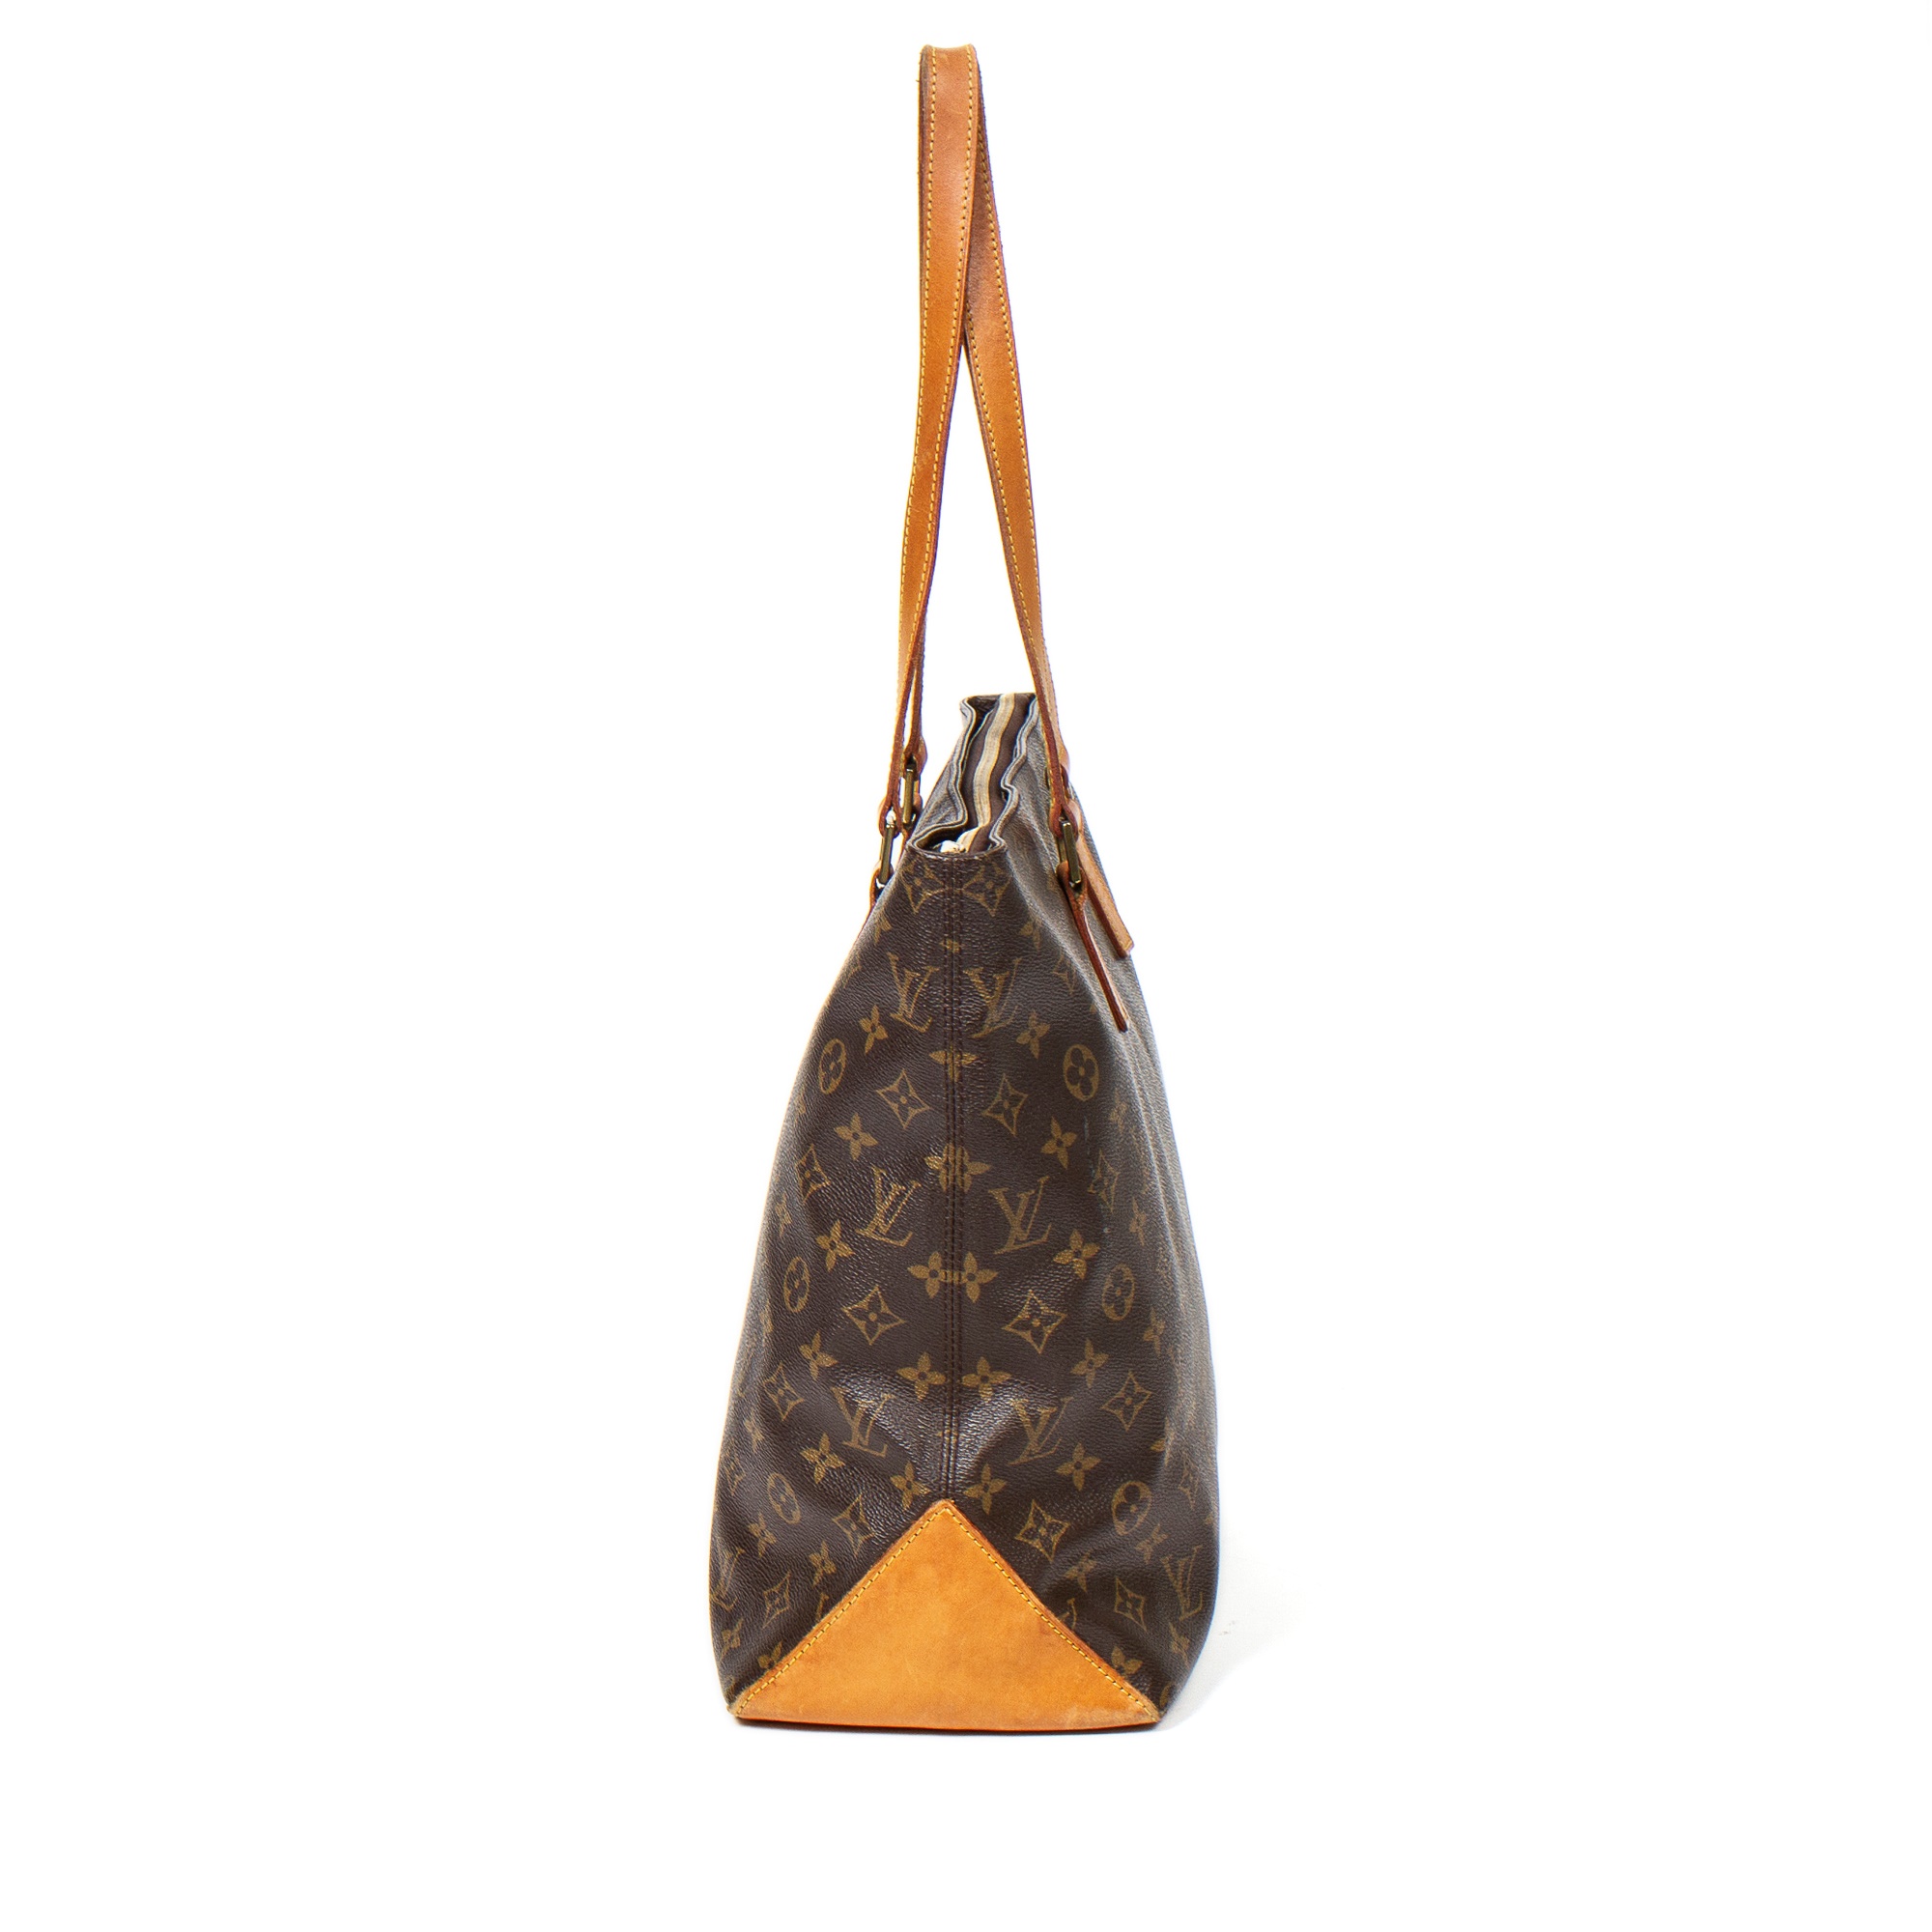 Sold at Auction: Louis Vuitton, LOUIS VUITTON CABAS MEZZO SHOULDER BAG